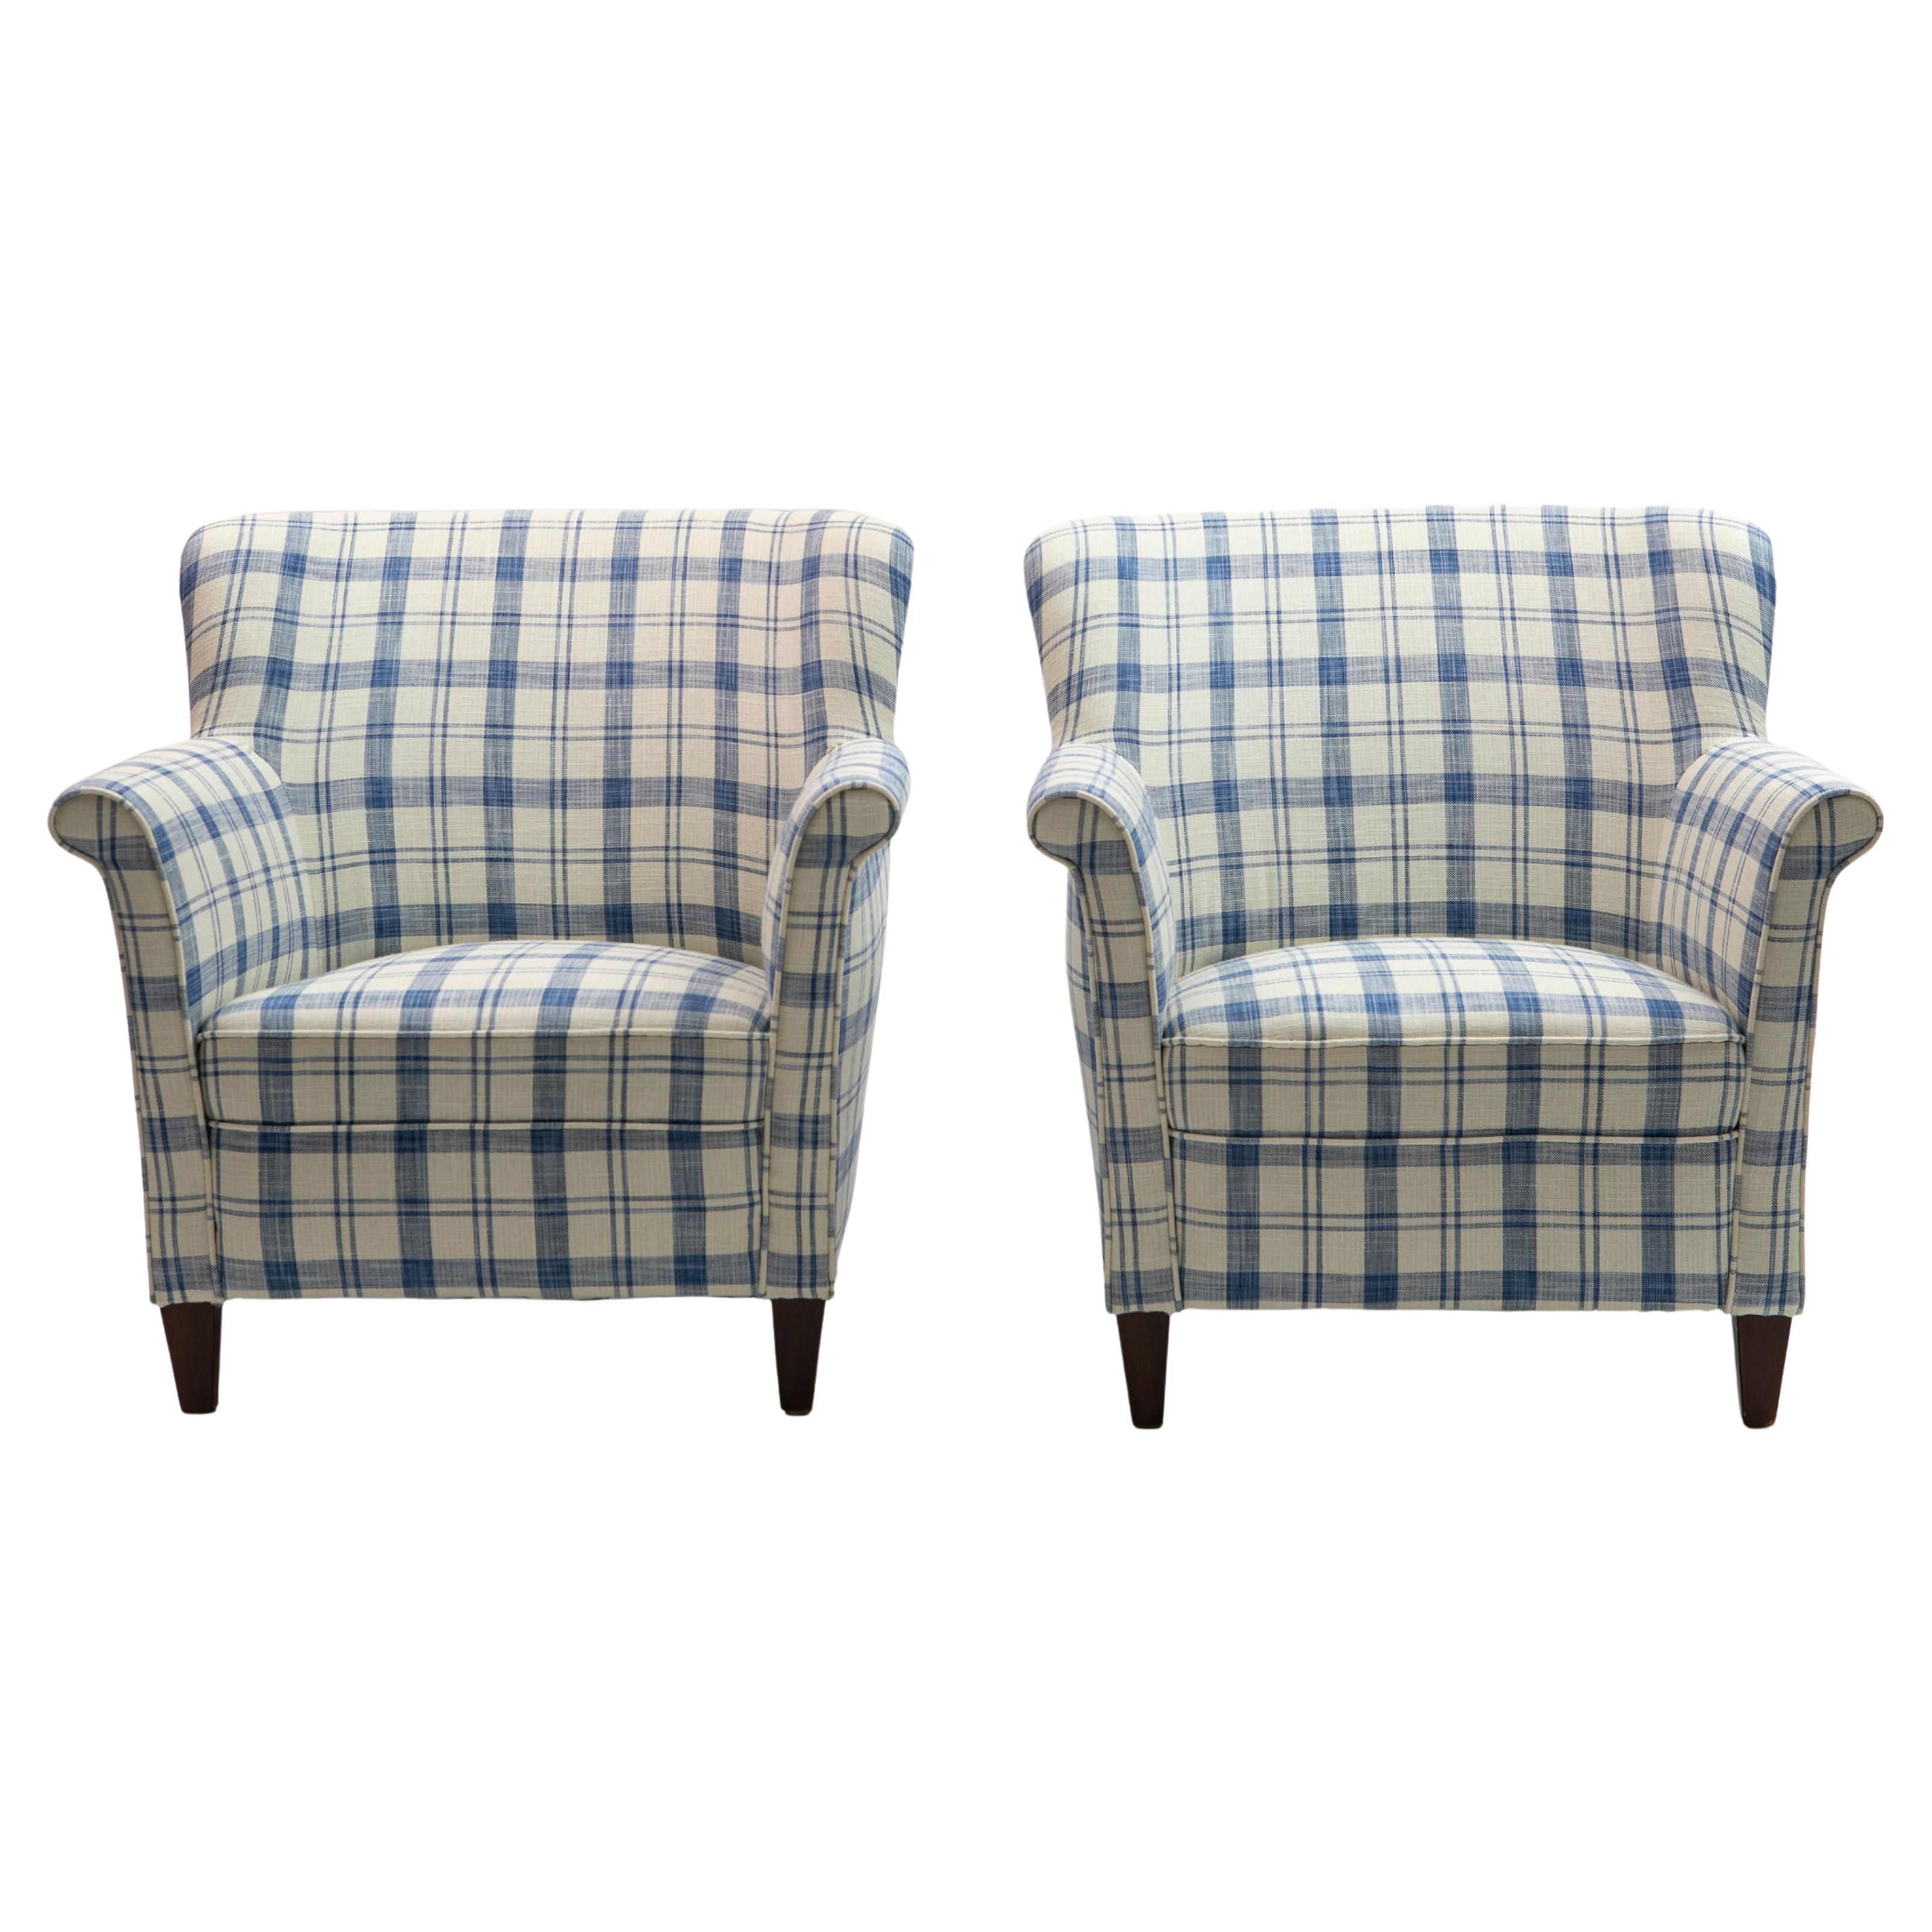 Ein Paar dänische Sessel um 1950.
Neu bezogen mit einem blau-weiß karierten Leinenmischgewebe von 